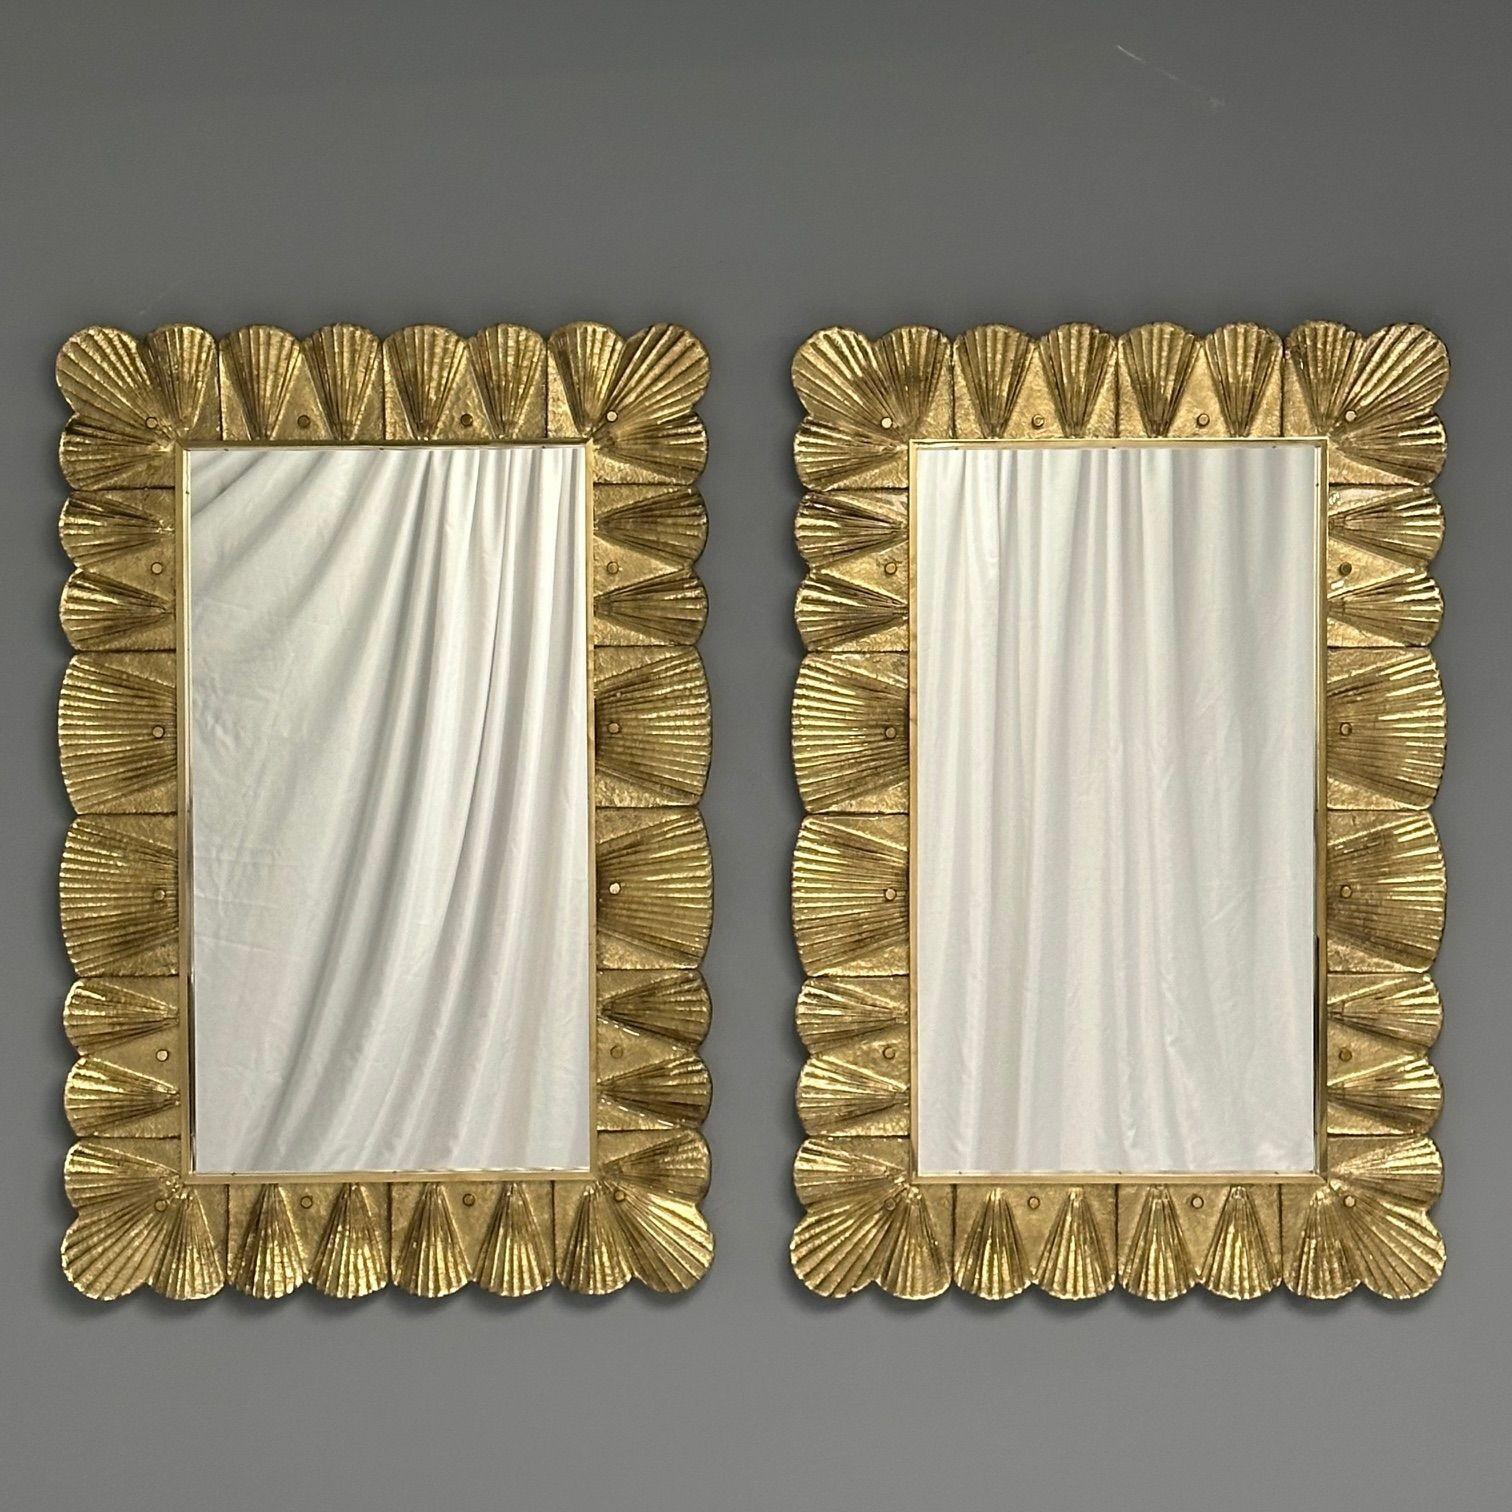 Contemporary, Wall Mirrors with Scallop Motif, Murano Glass, Gold Gilt, Brass, Italy, 2023

Paire de miroirs muraux rectangulaires à motif de festons, conçus et produits en Italie. Chaque miroir est doté de trous au dos permettant de le suspendre